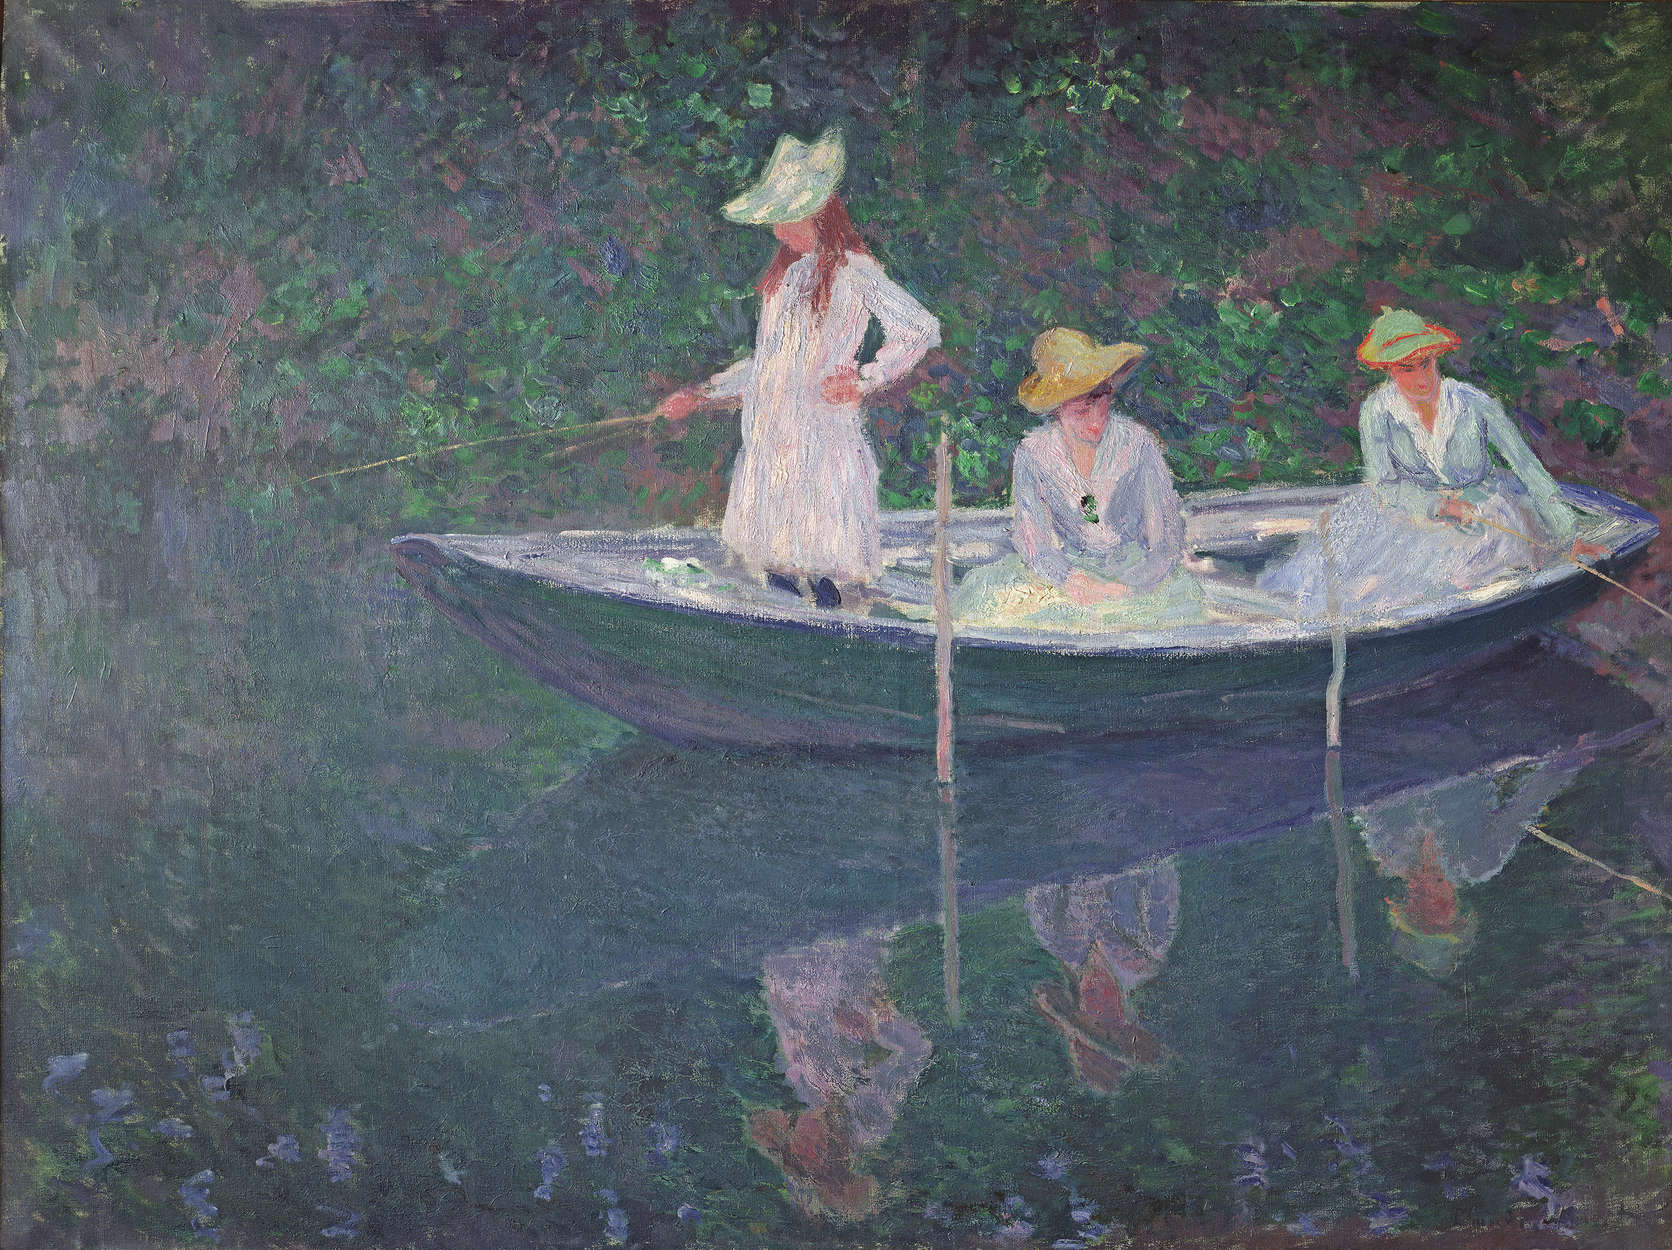             Il murale "La barca a Giverny" di Claude Monet
        